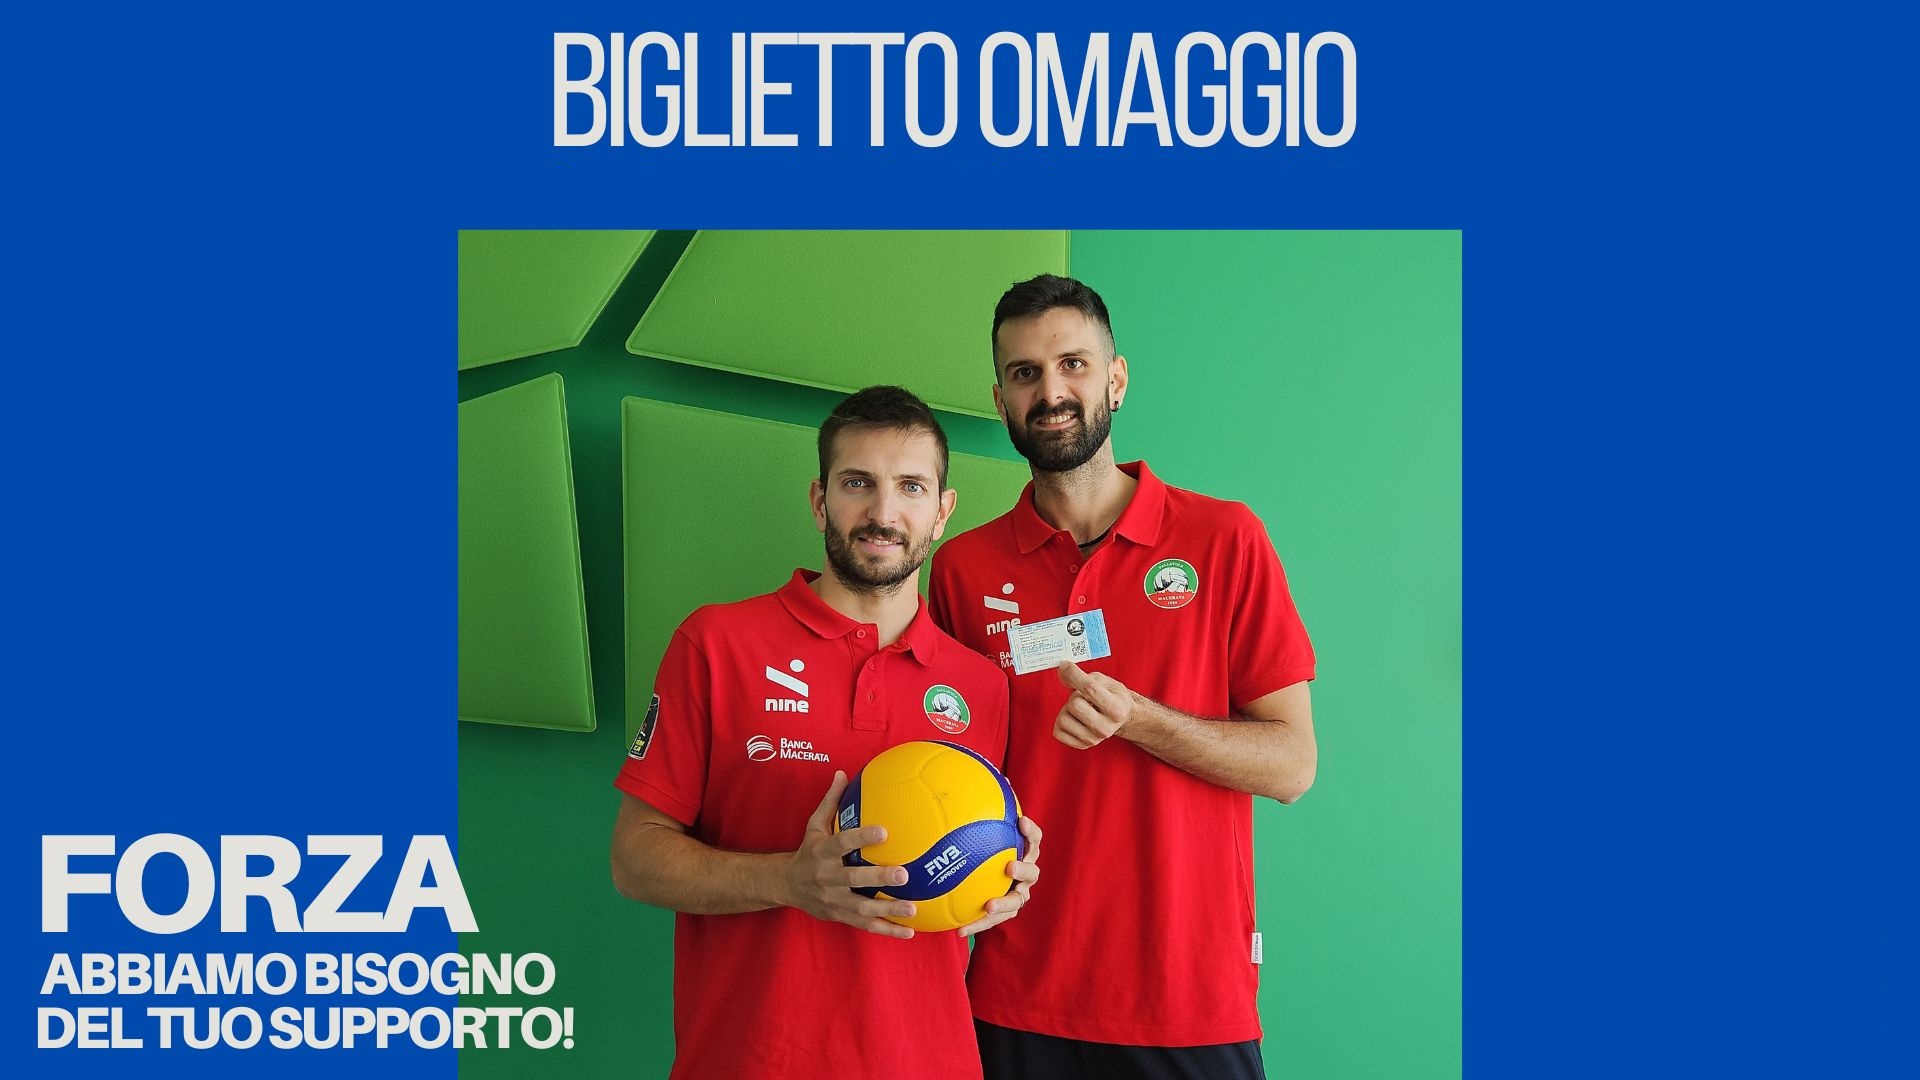 Volley Banca Macerata: scopri come ritirare il tuo biglietto omaggio | Banca Macerata 1